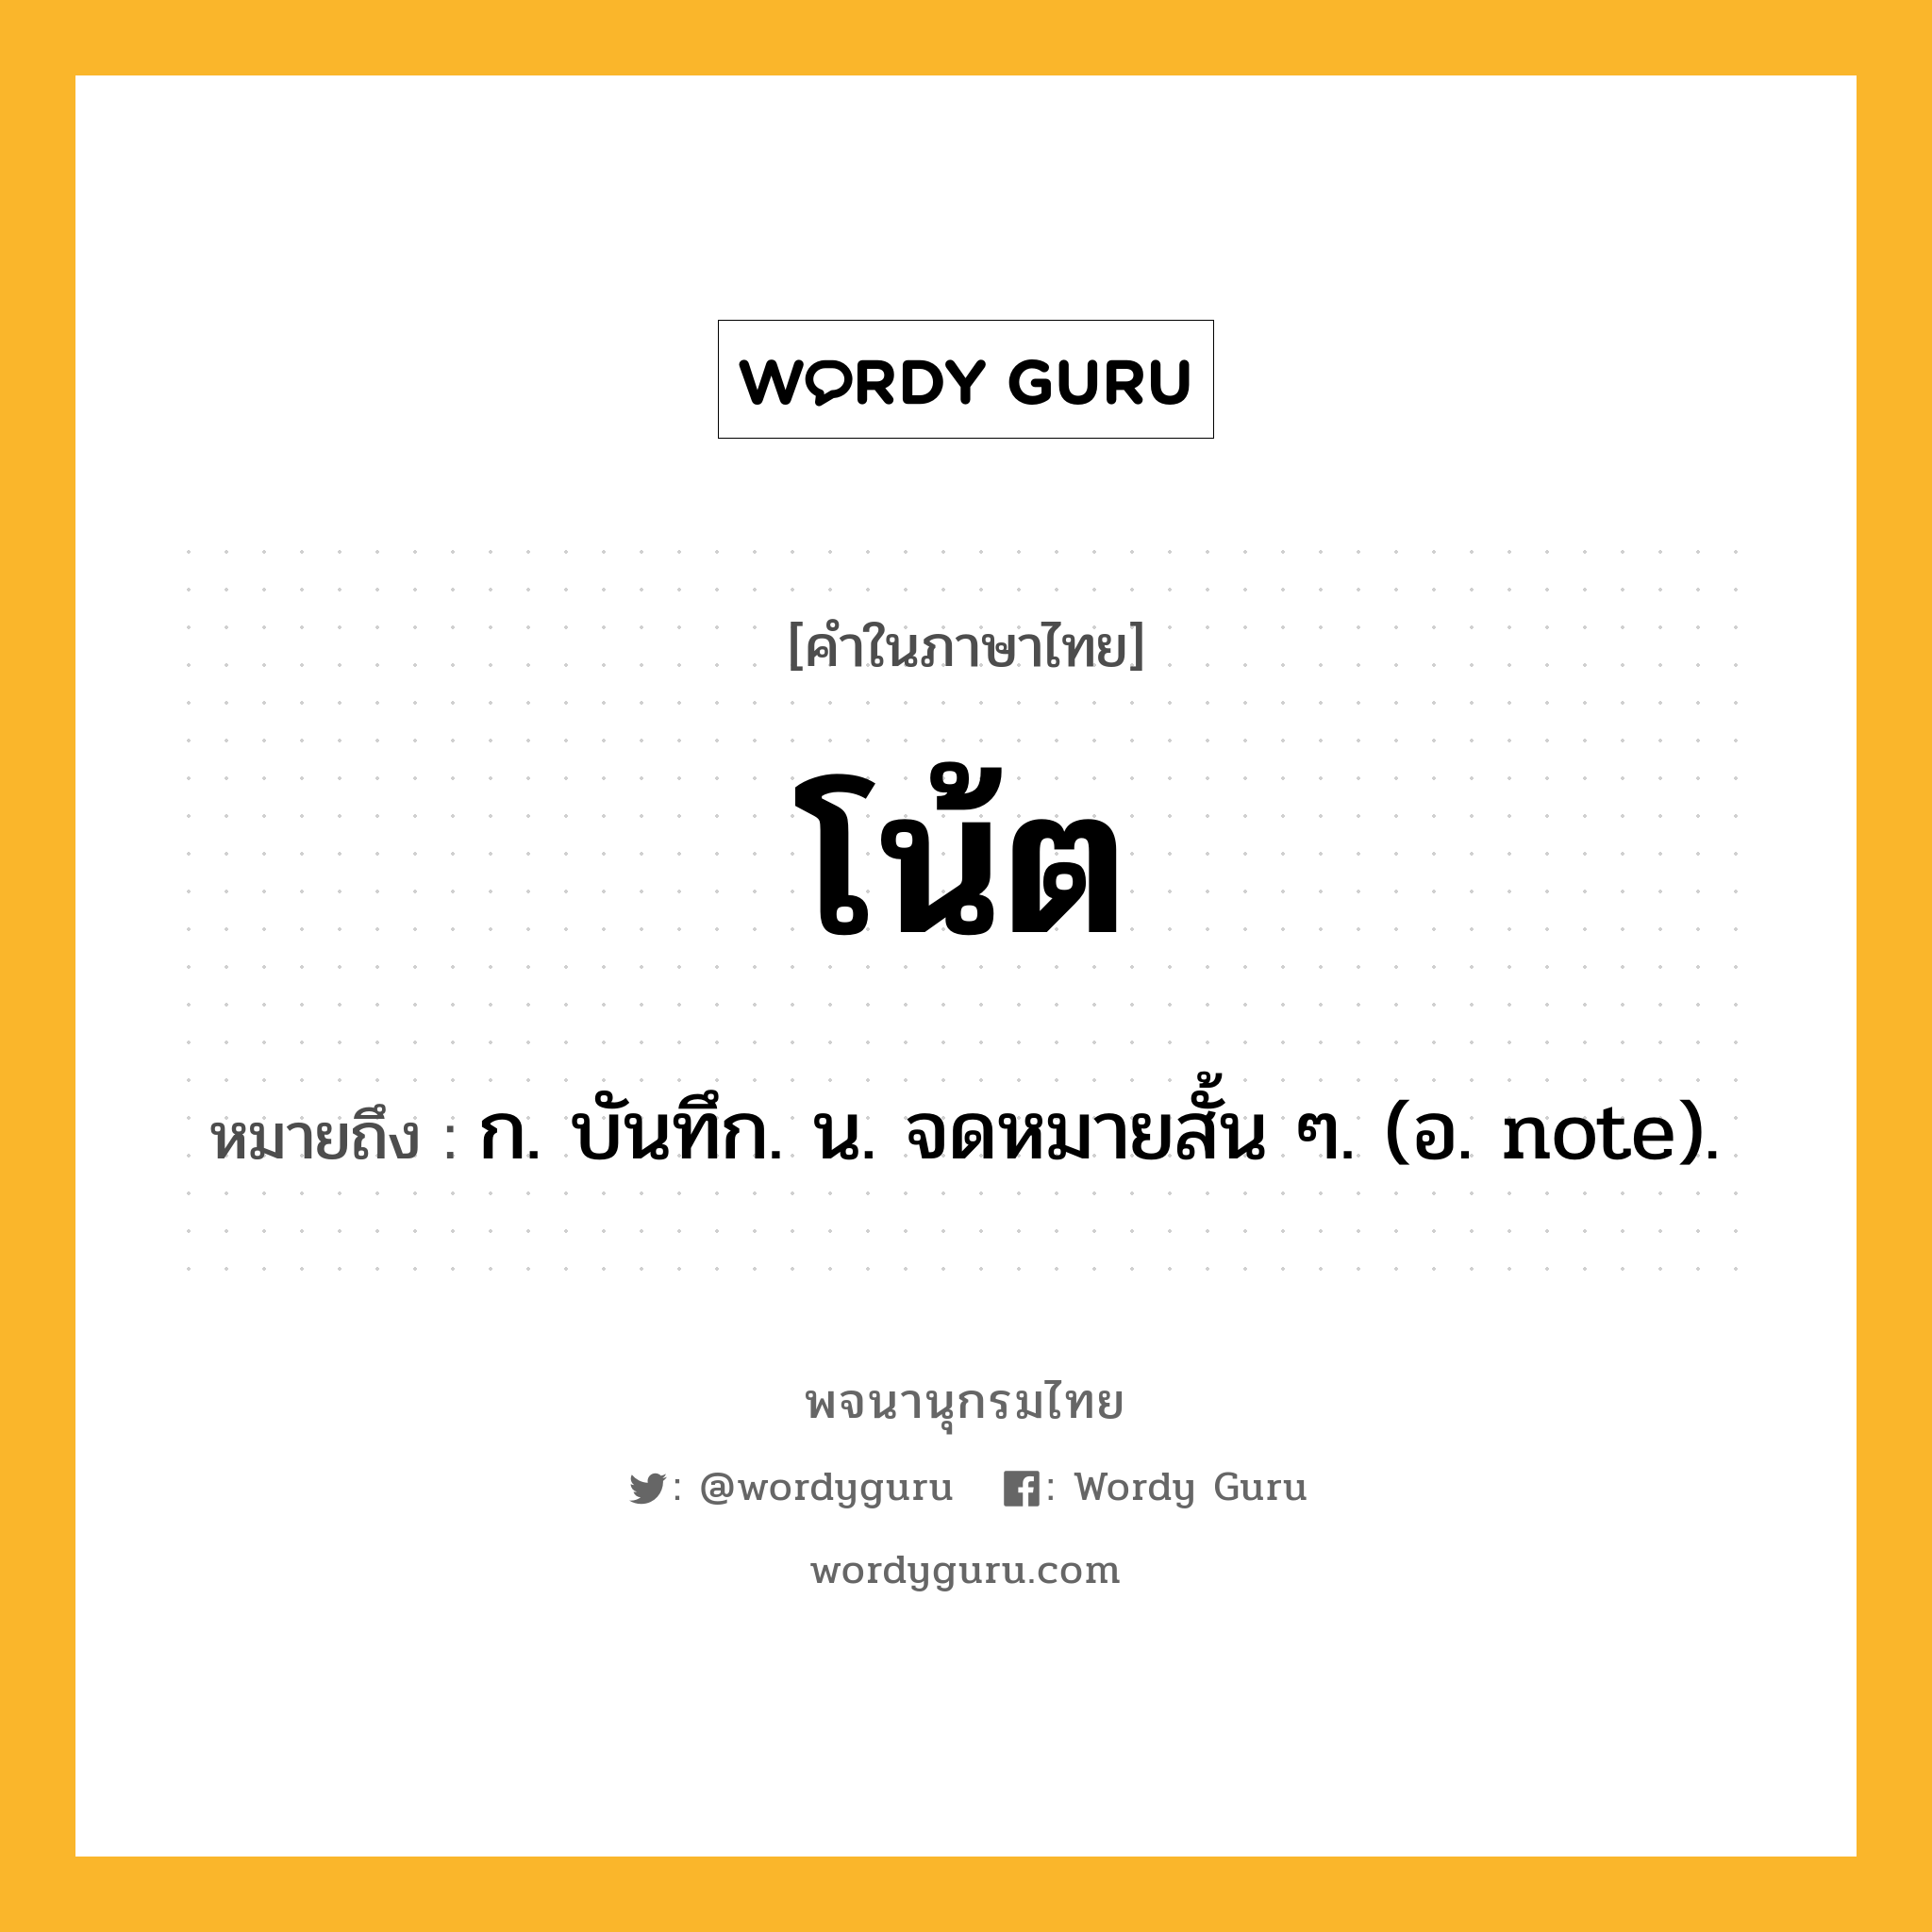 โน้ต หมายถึงอะไร?, คำในภาษาไทย โน้ต หมายถึง ก. บันทึก. น. จดหมายสั้น ๆ. (อ. note).